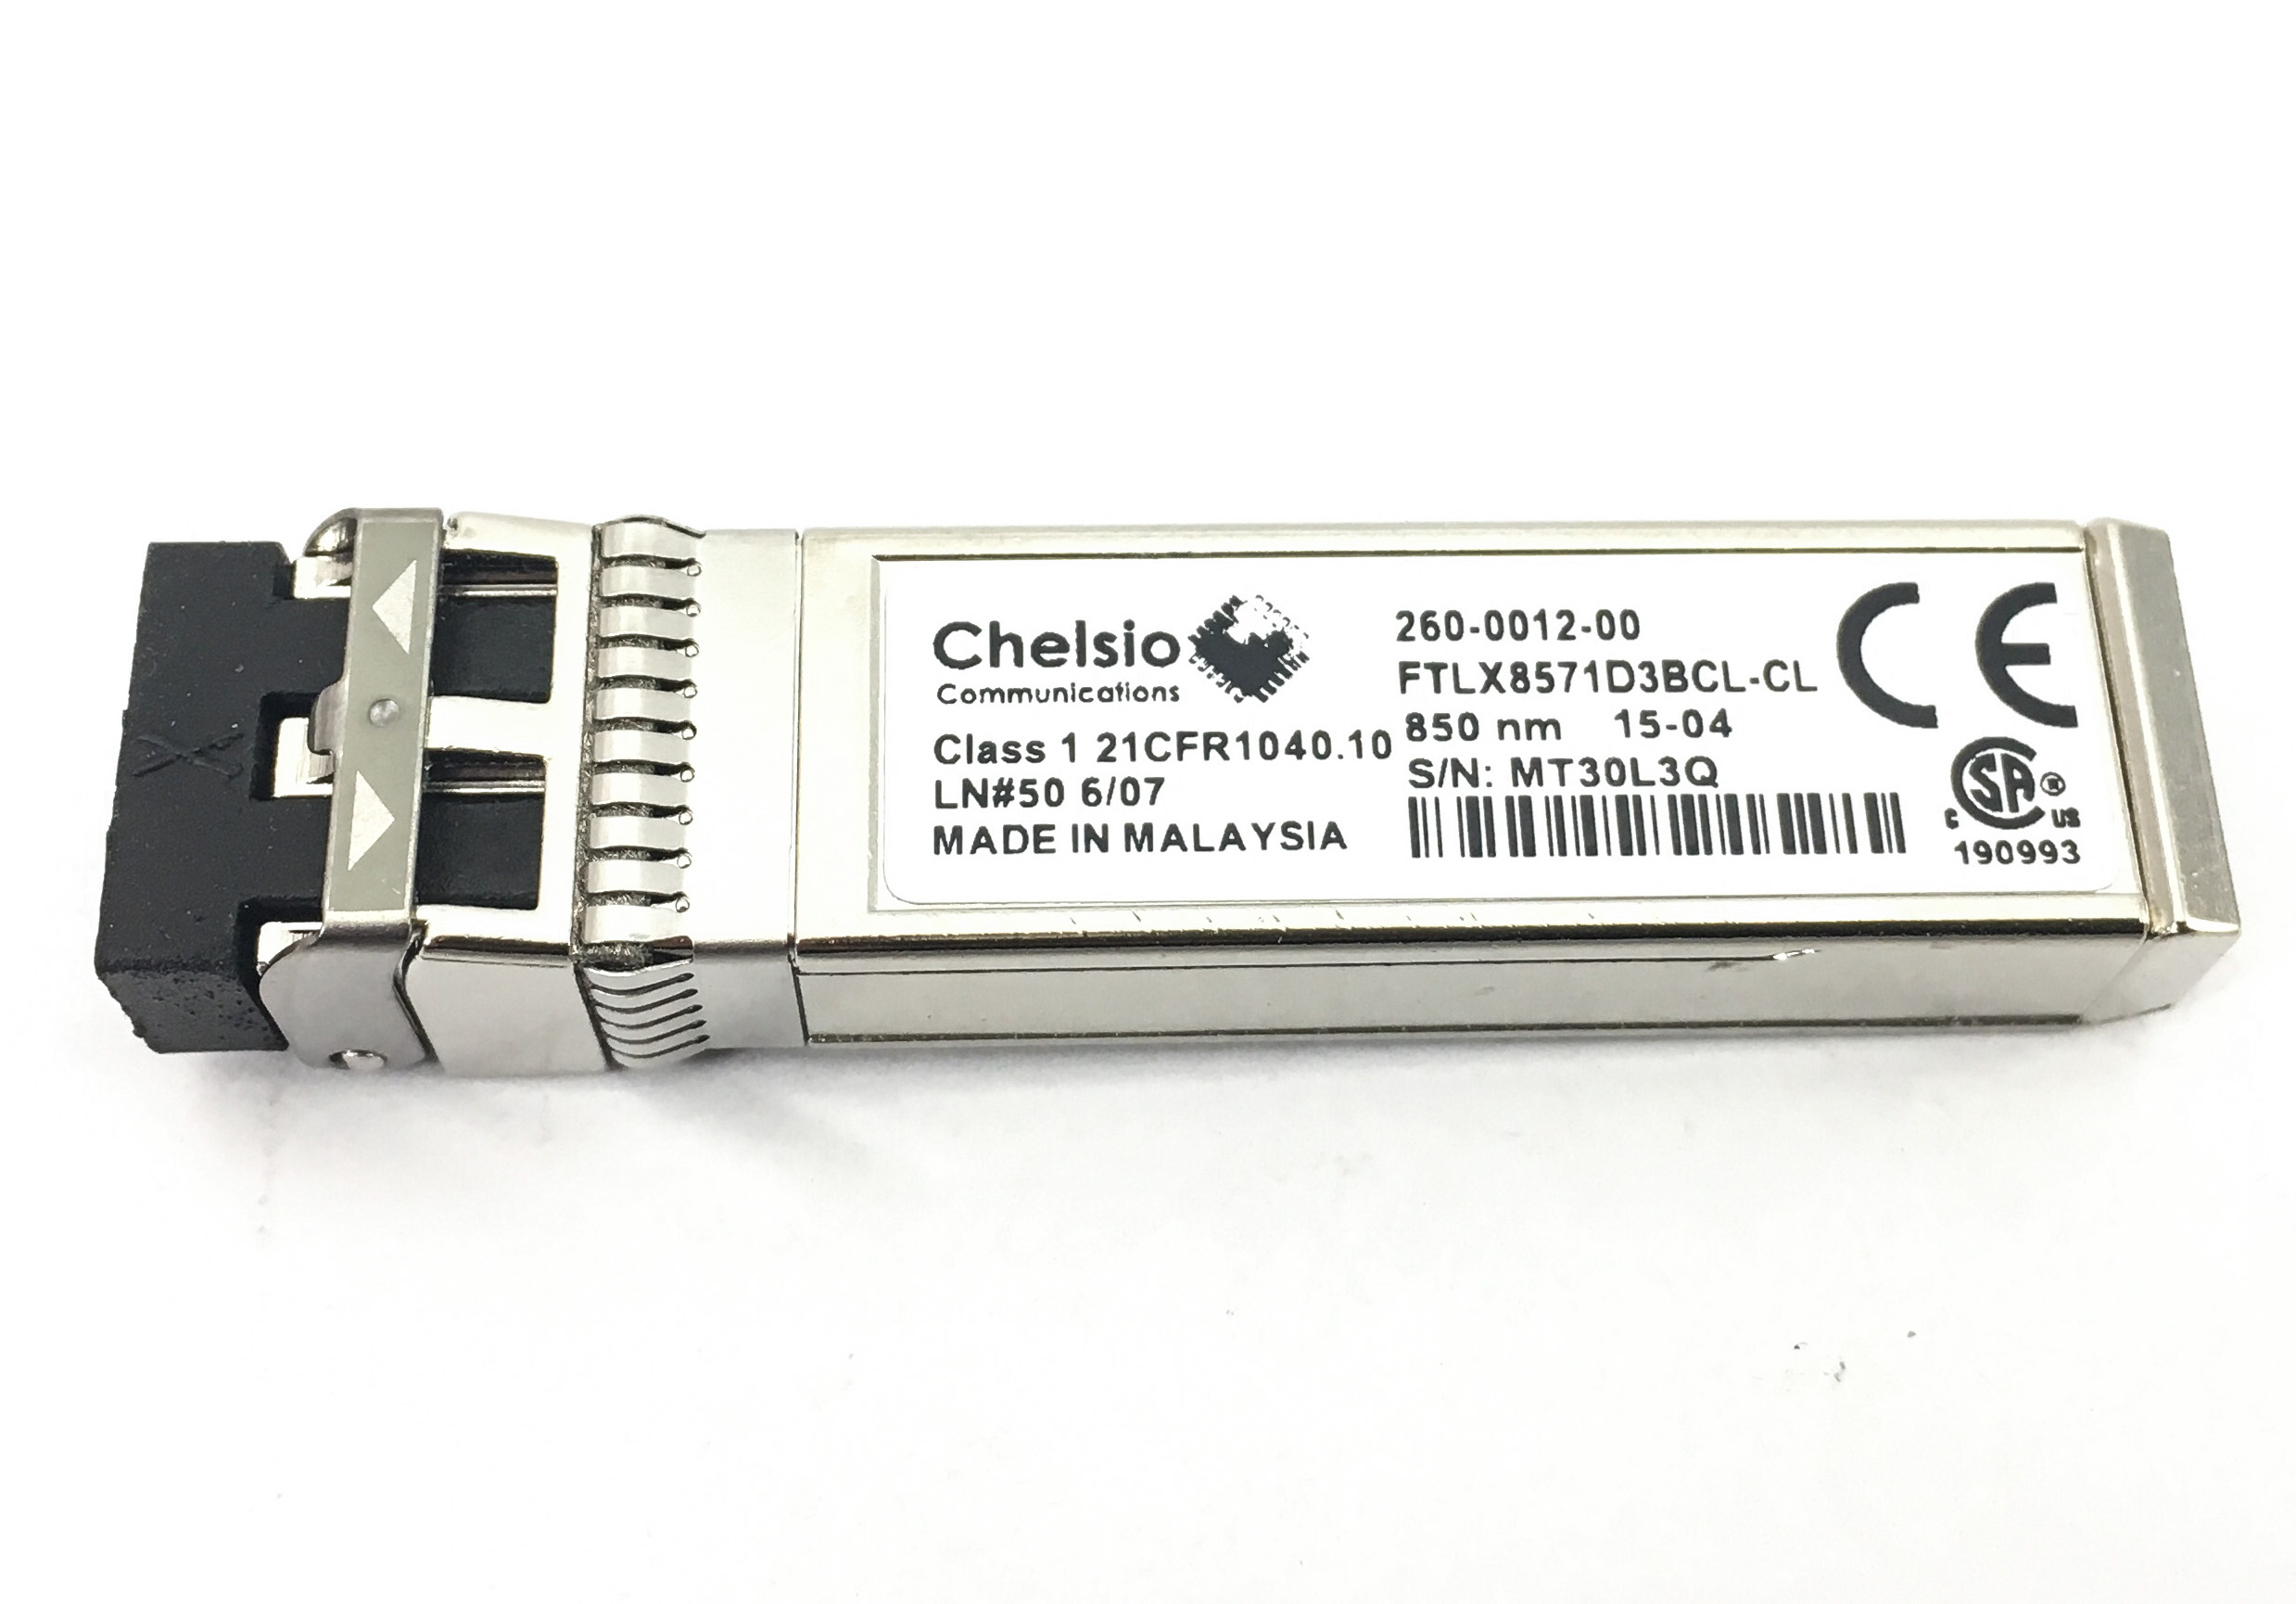 Chelsio Finsair 10GBPS 850NM Multimode Datacom SFP+ Transceiver (FTLX8571D3BCL-CL)